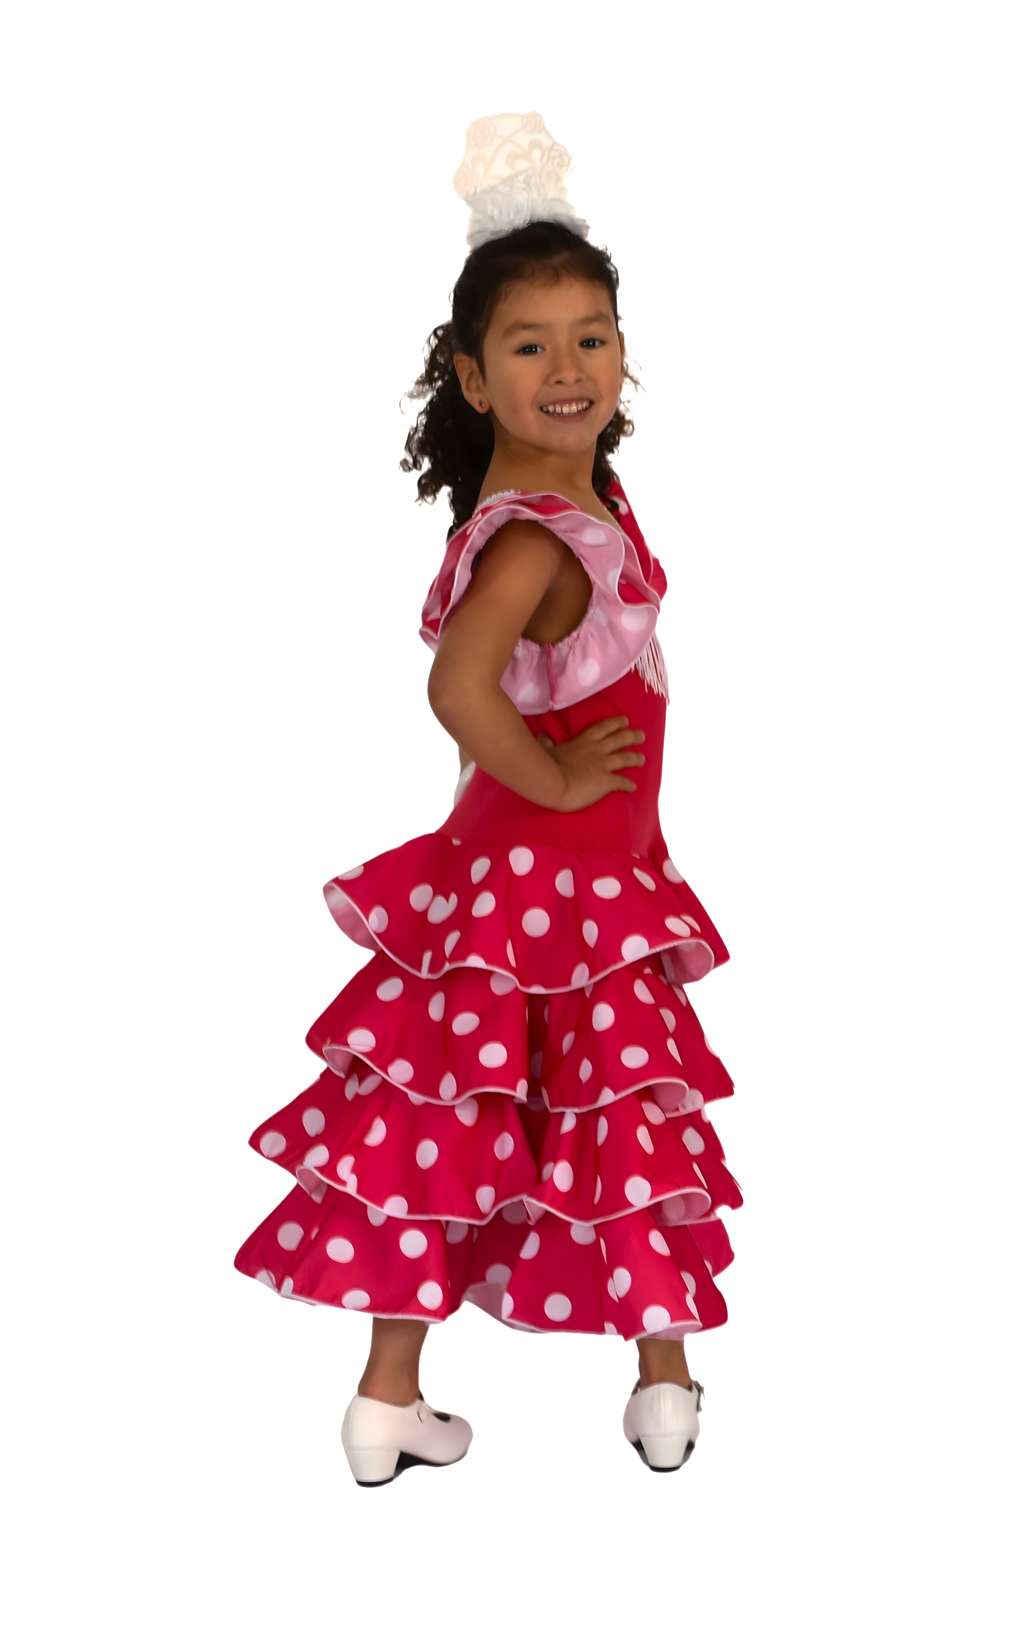 Falda de niña de baile flamenco o sevillanas de 5 volantes con topos -  FÑ-5V-TOP